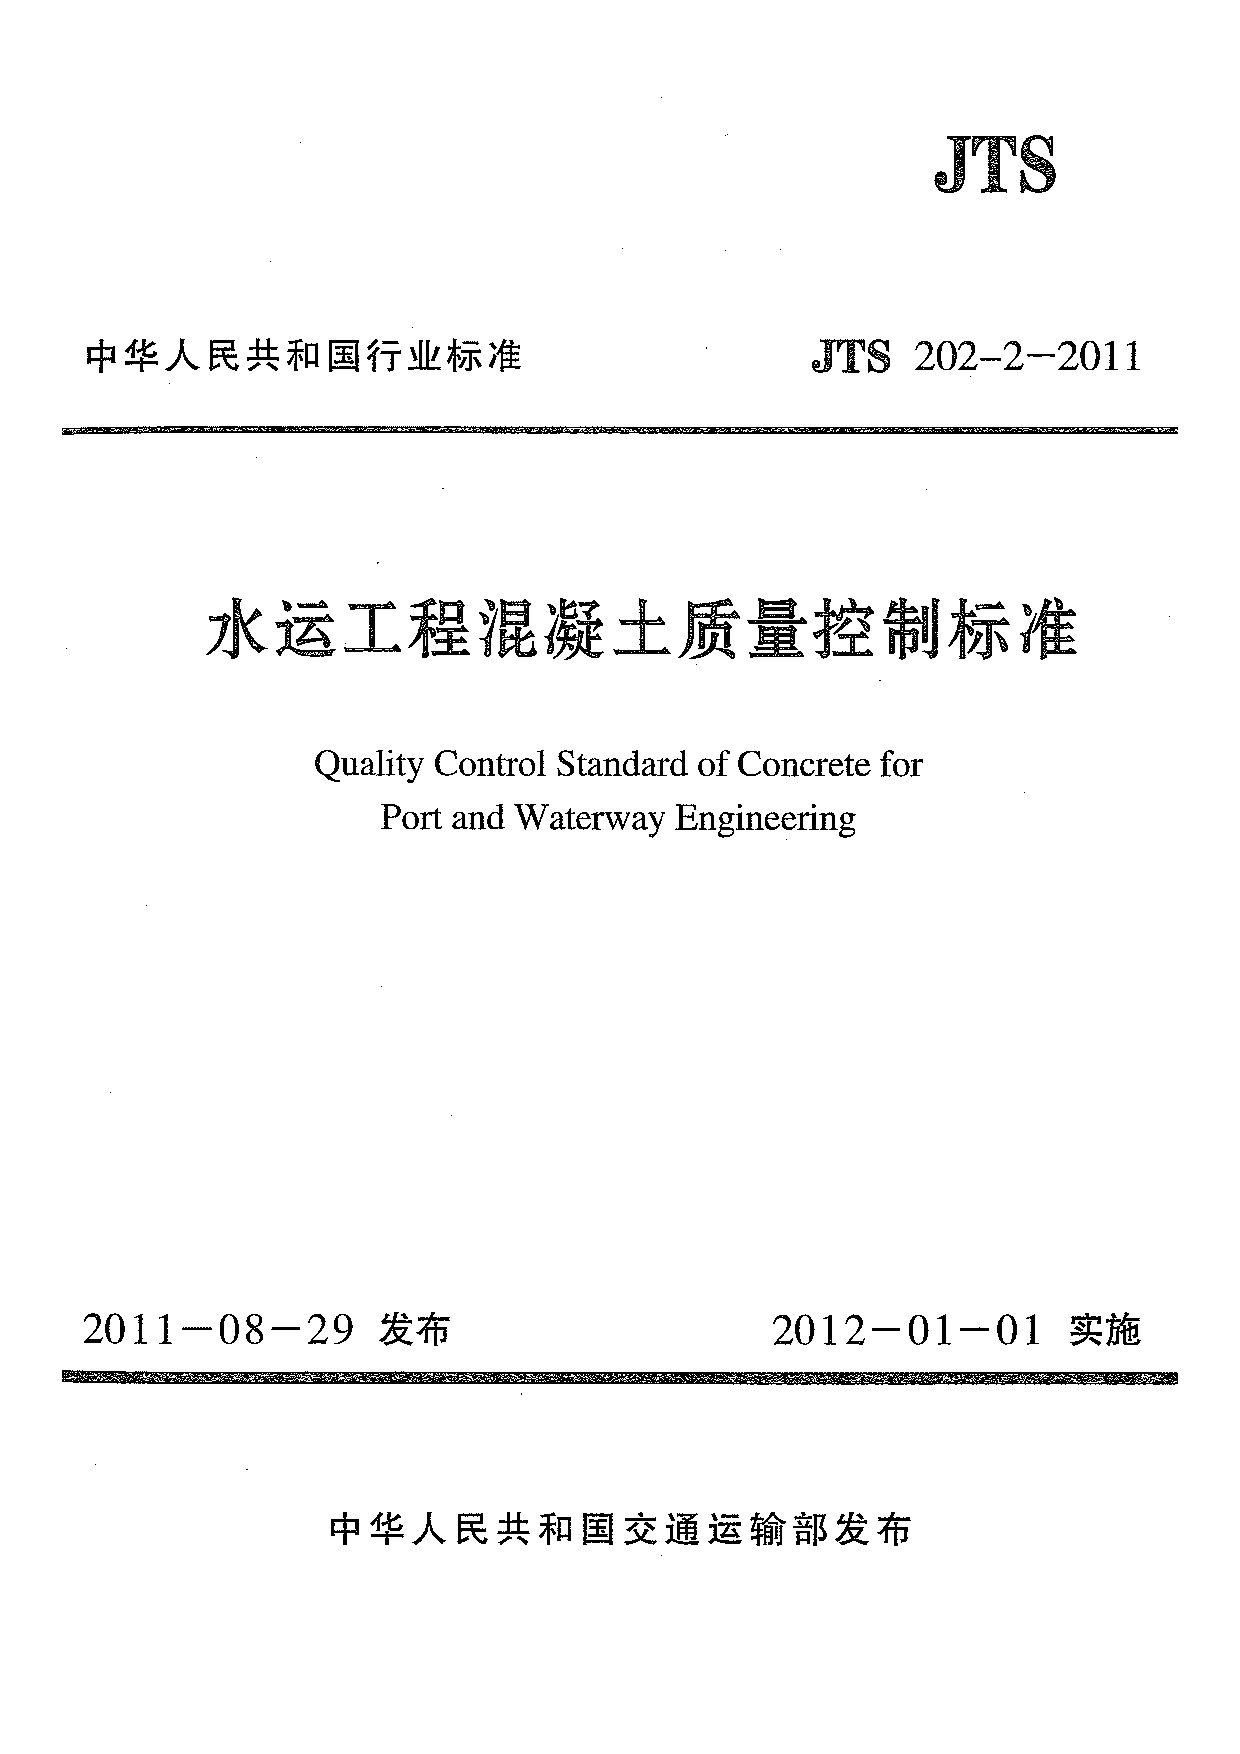 JTS 202-2-2011封面图